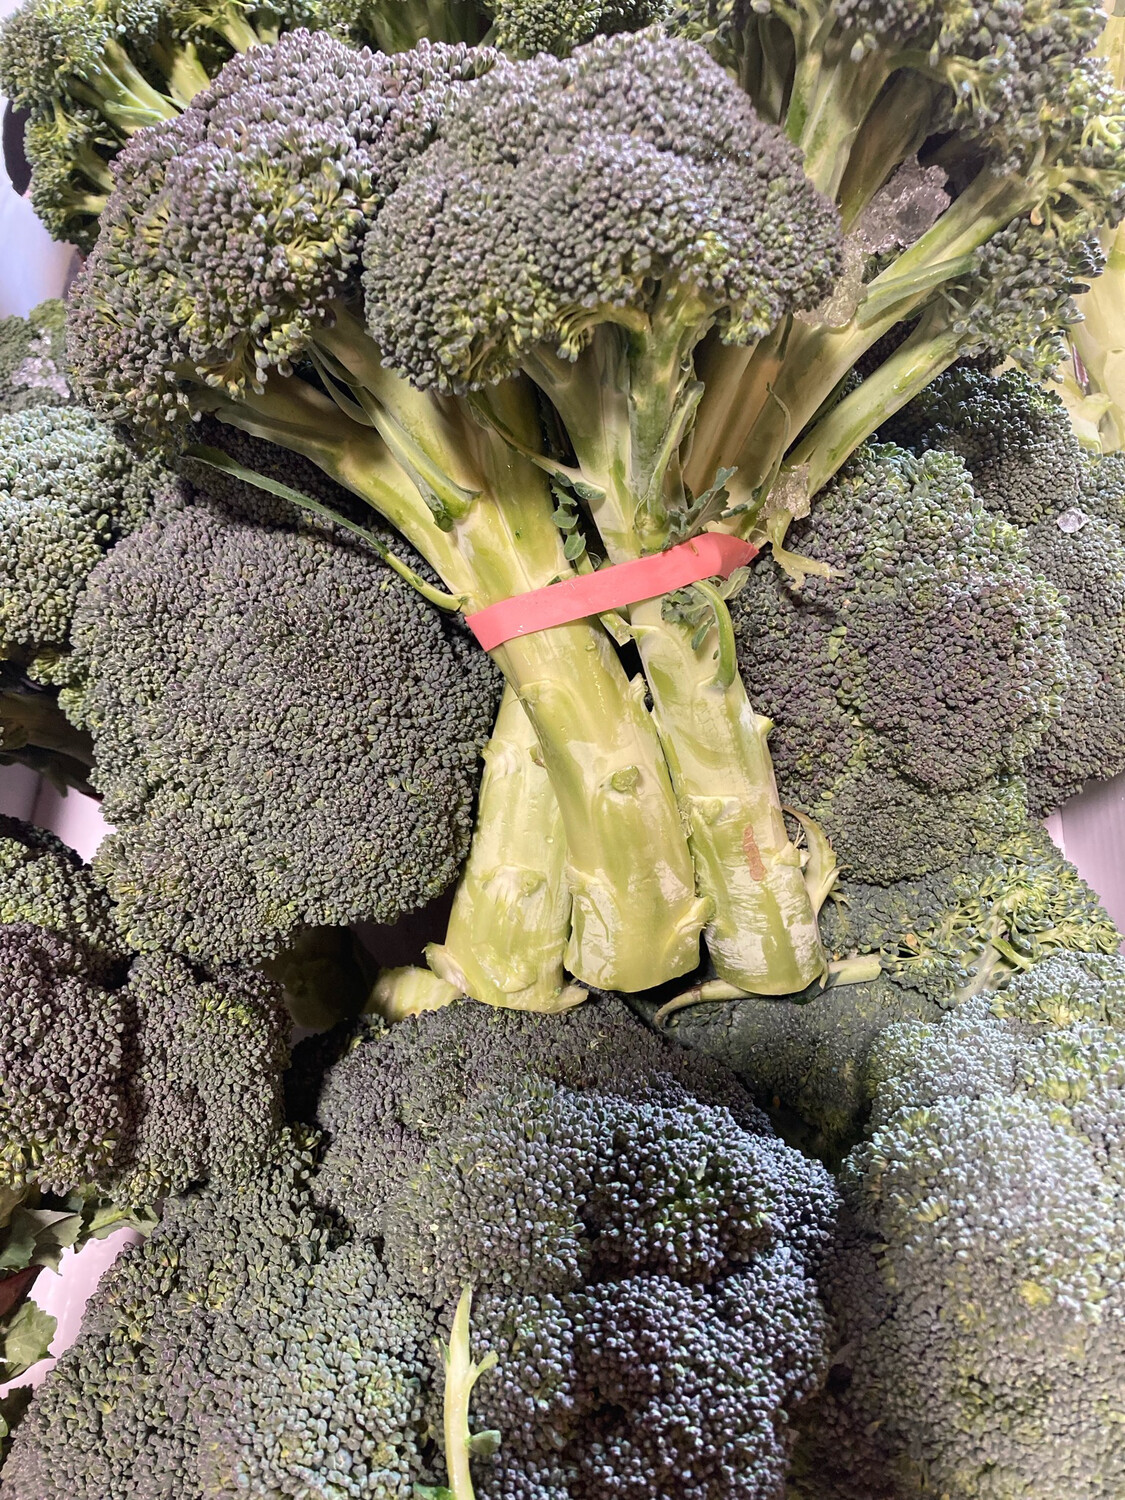 Broccoli 长茎西兰花 $2.00/LB